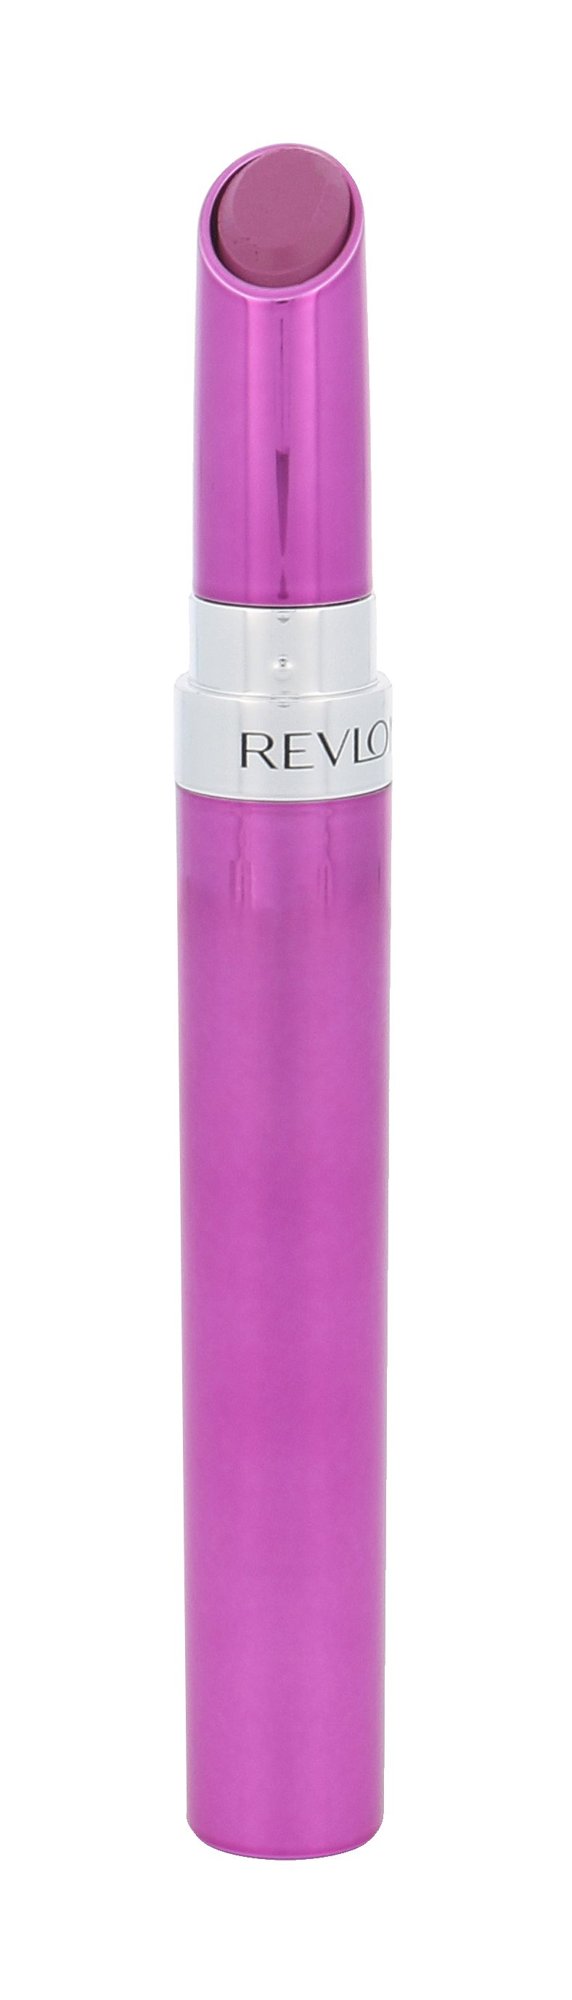 Revlon Ultra HD Gel Lipcolor